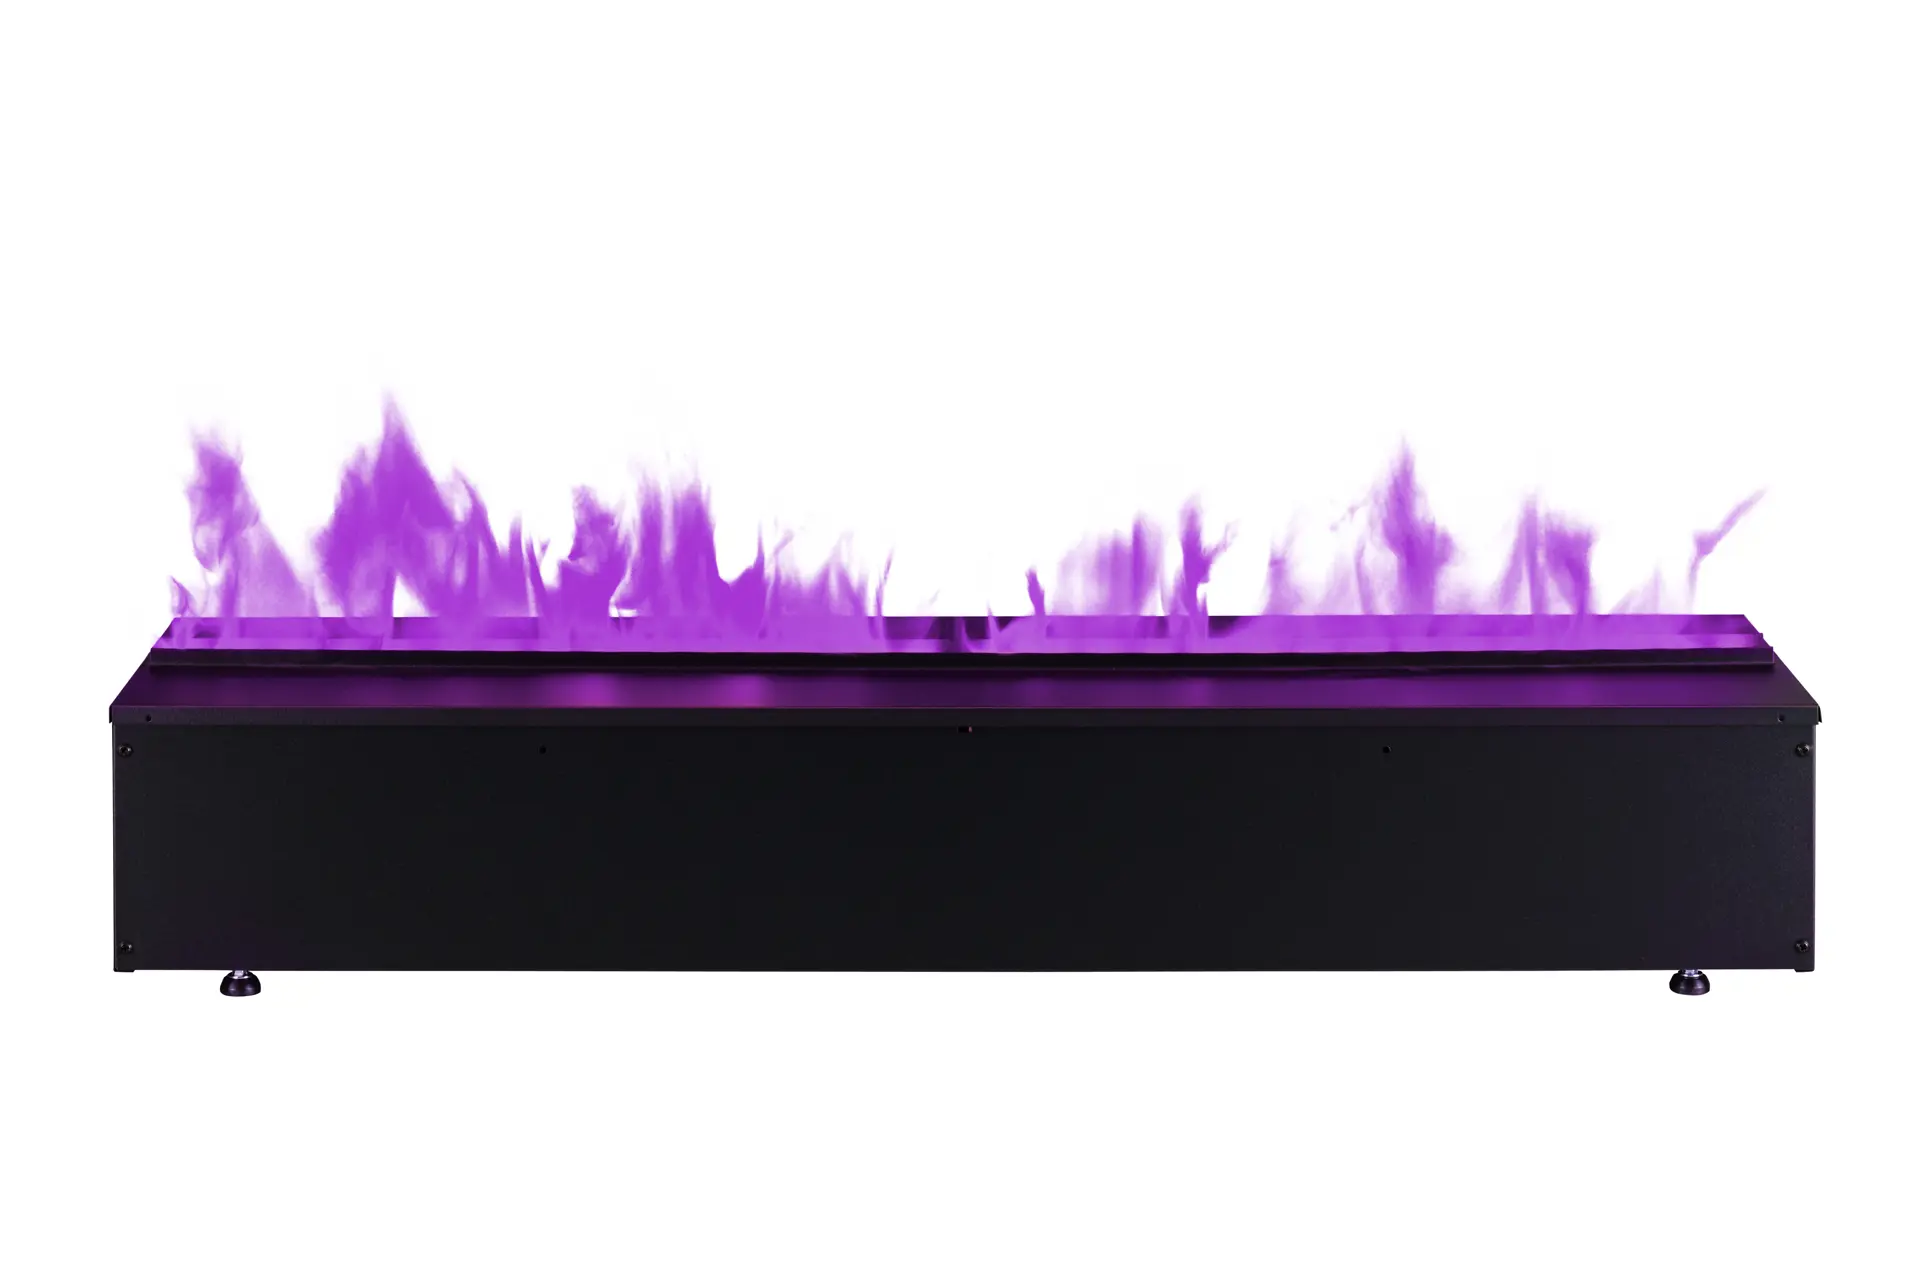 01_Dimplex_Cassette 1000_400001277_Front Purple Flame.jpg